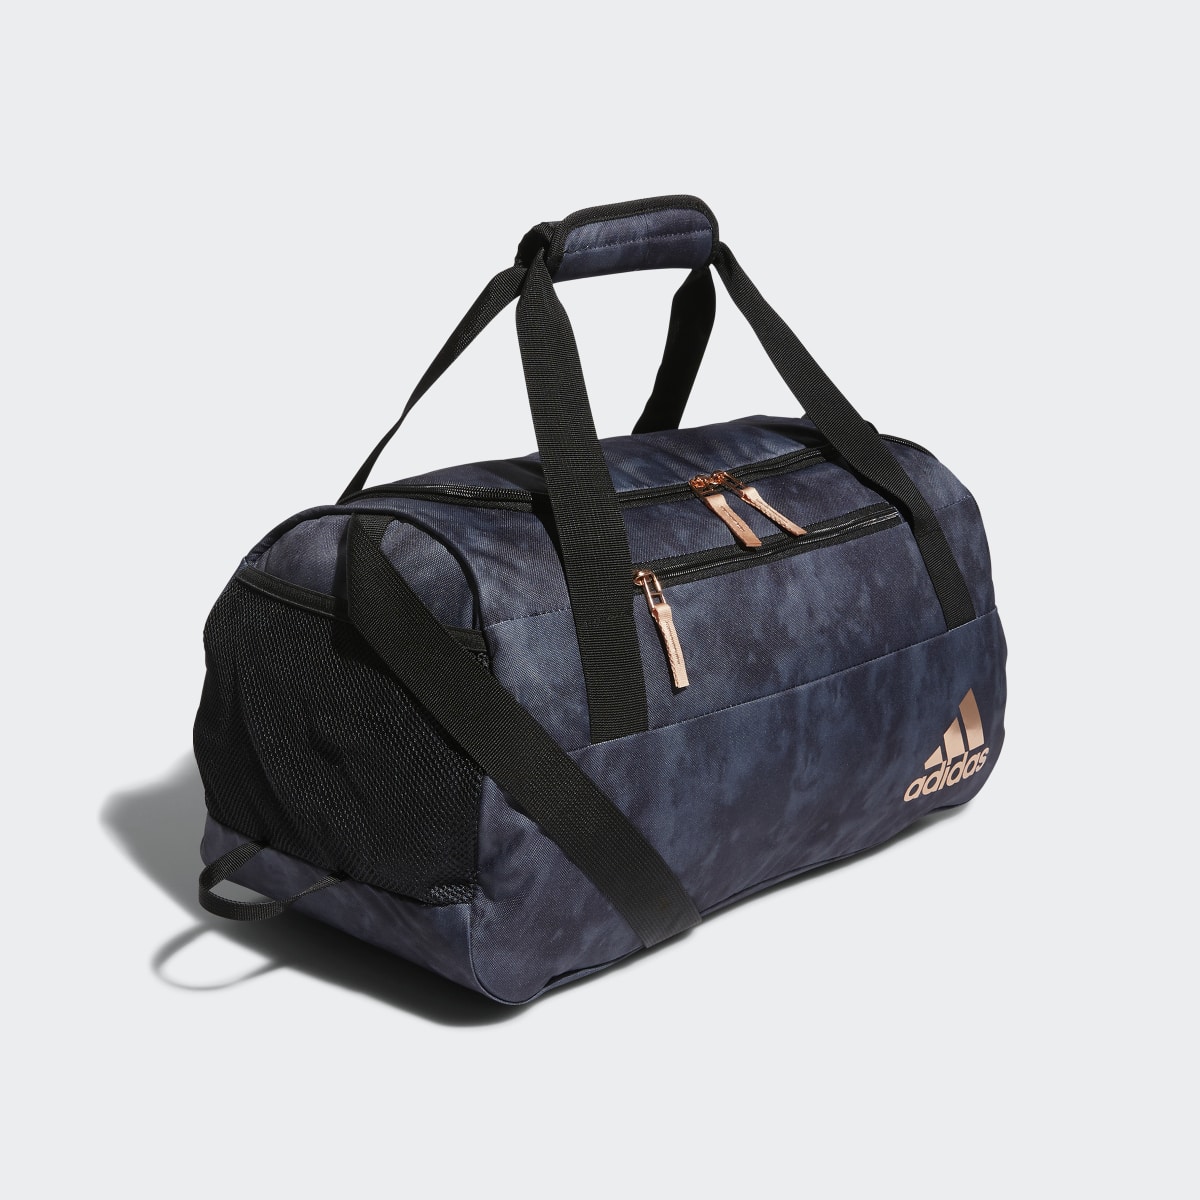 Adidas Squad Duffel Bag. 4